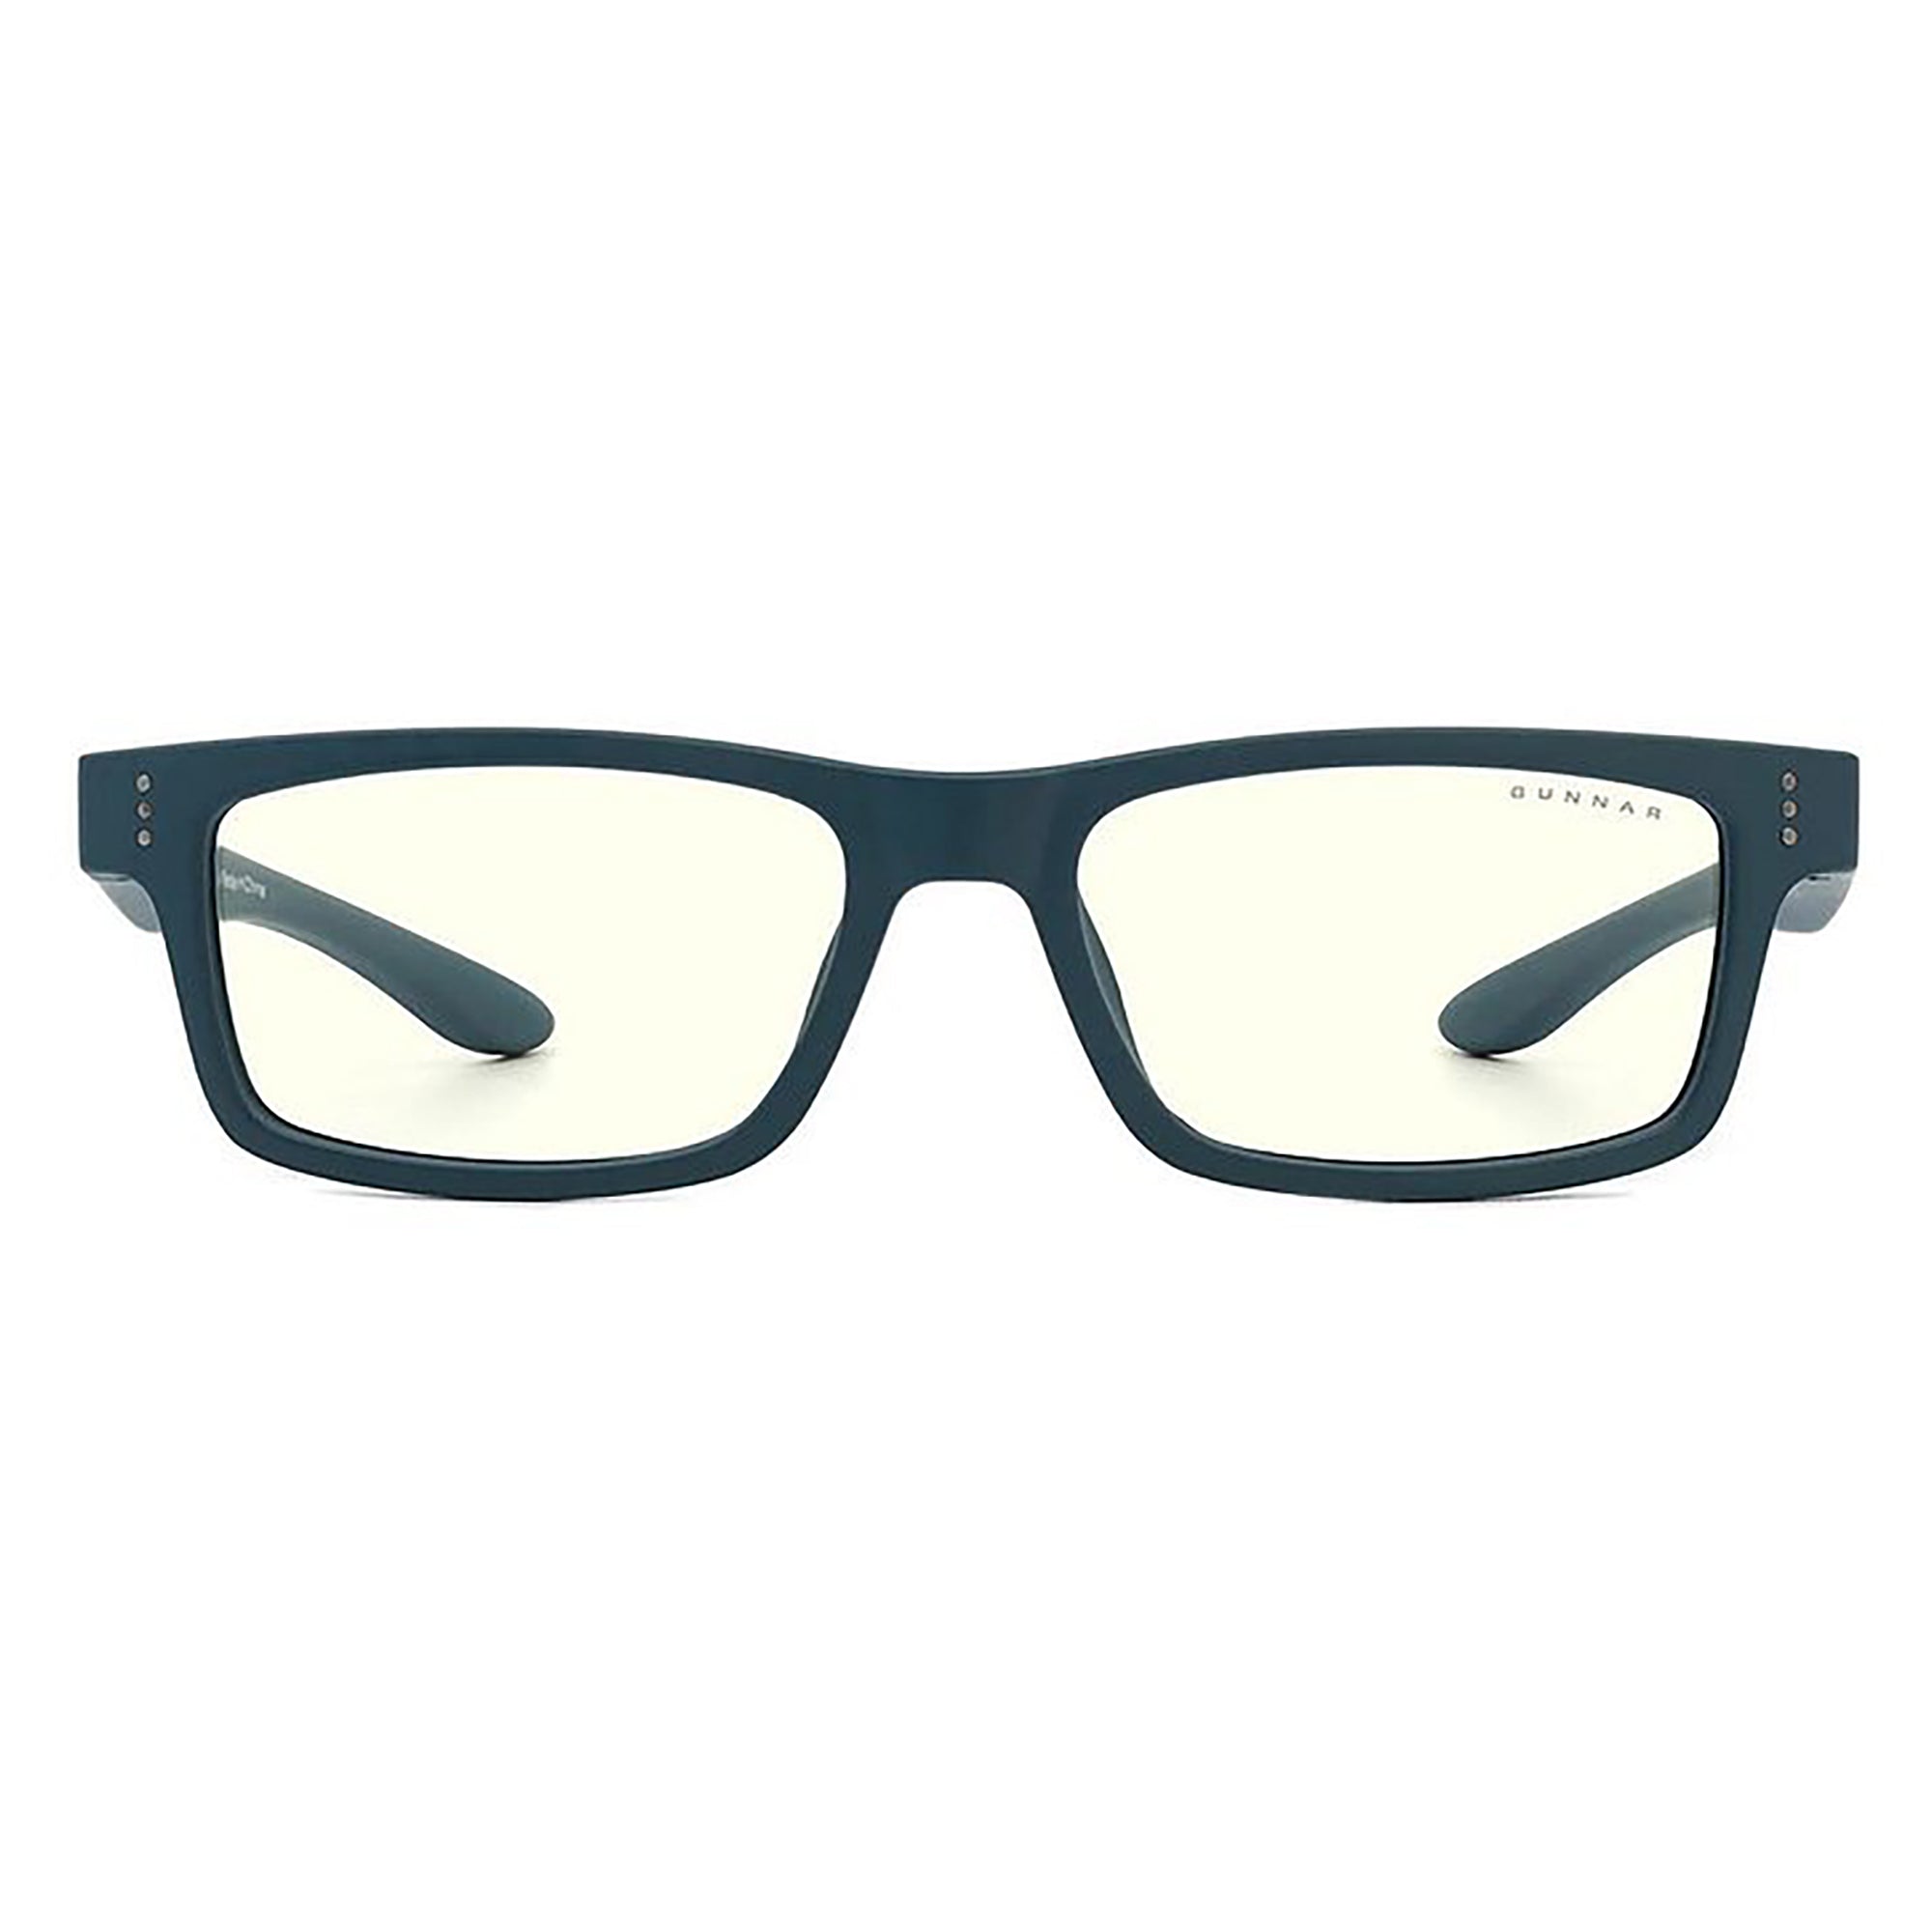 Gunnar Cruz Kids Indoor Digital Eyewear/Glasses, Teal (4-8 years)